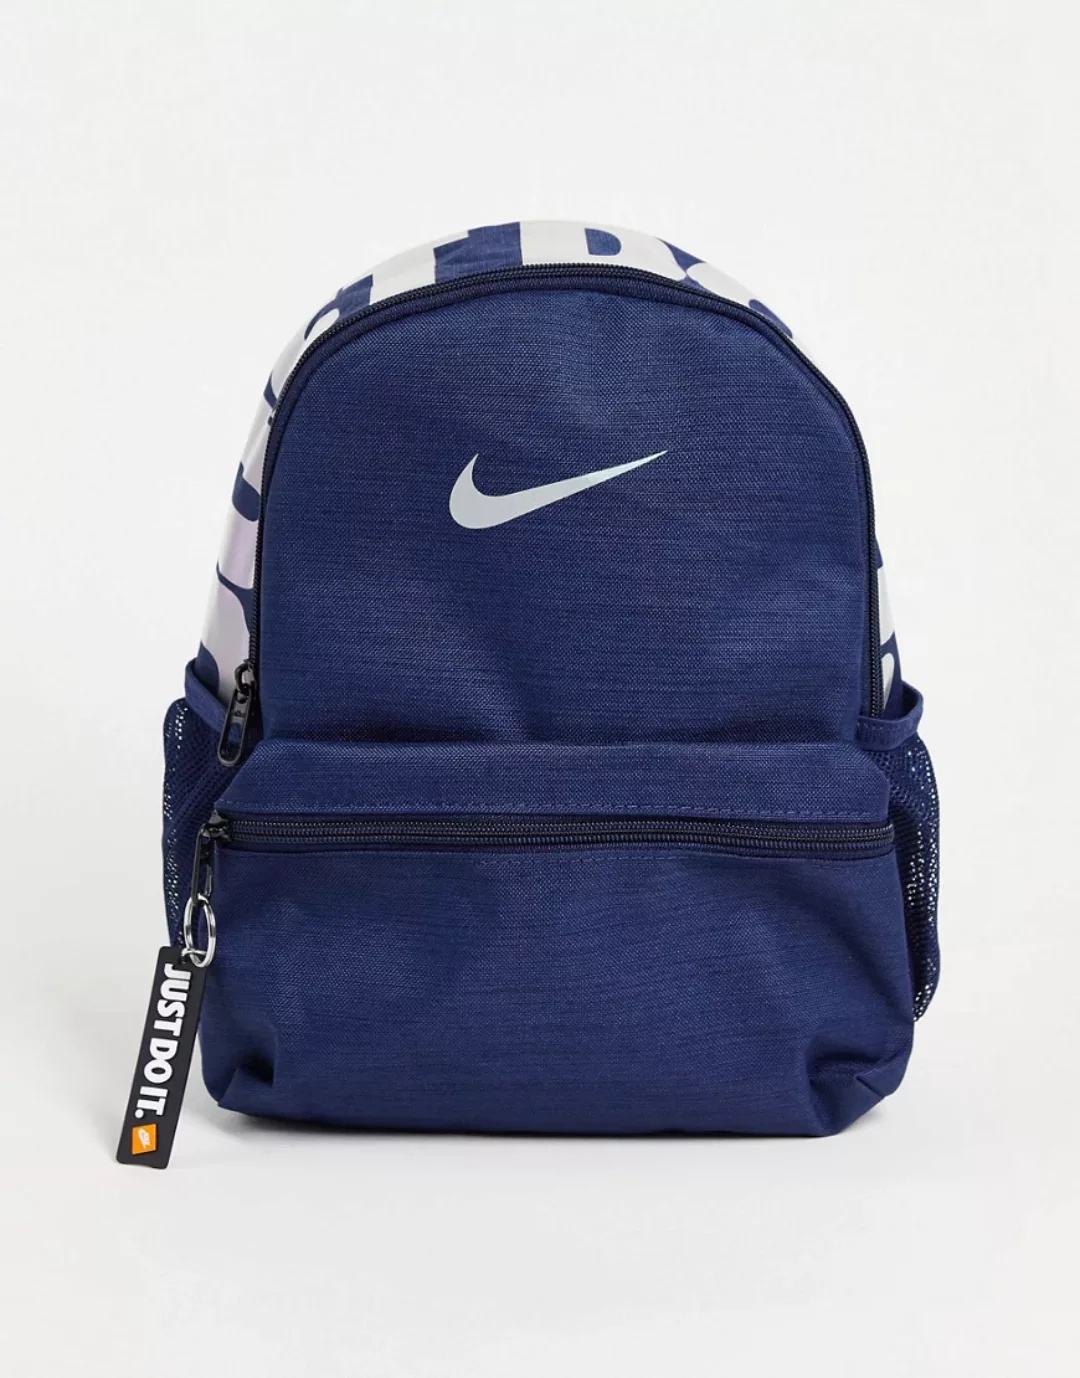 Nike – Just Do It – Rucksack in Marineblau günstig online kaufen